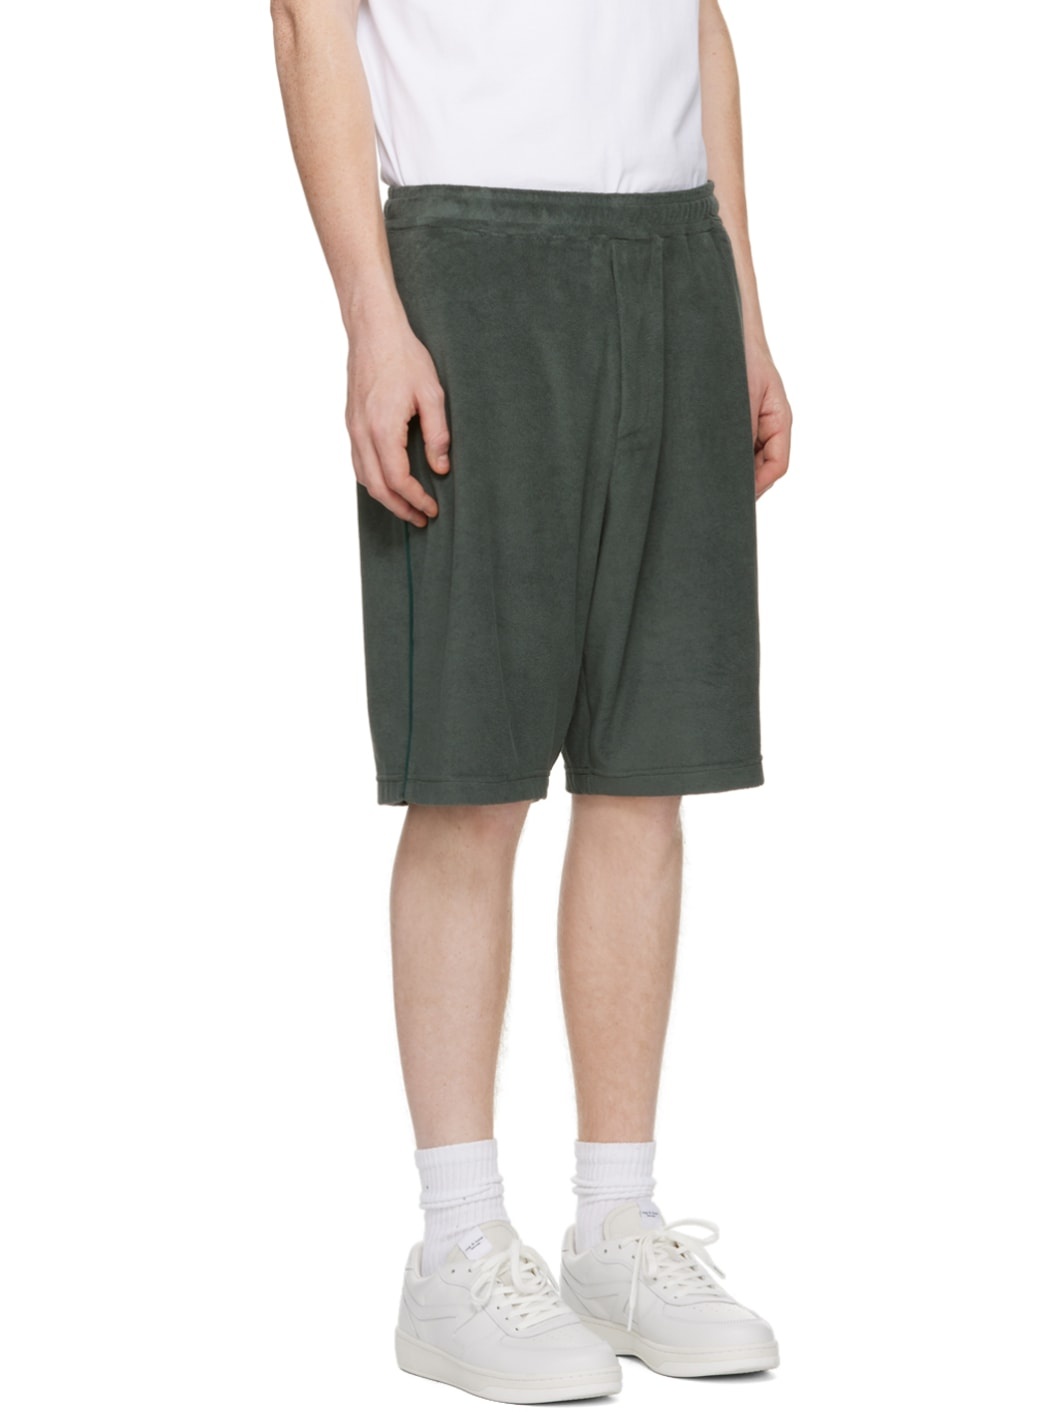 Green Piping Shorts - 2